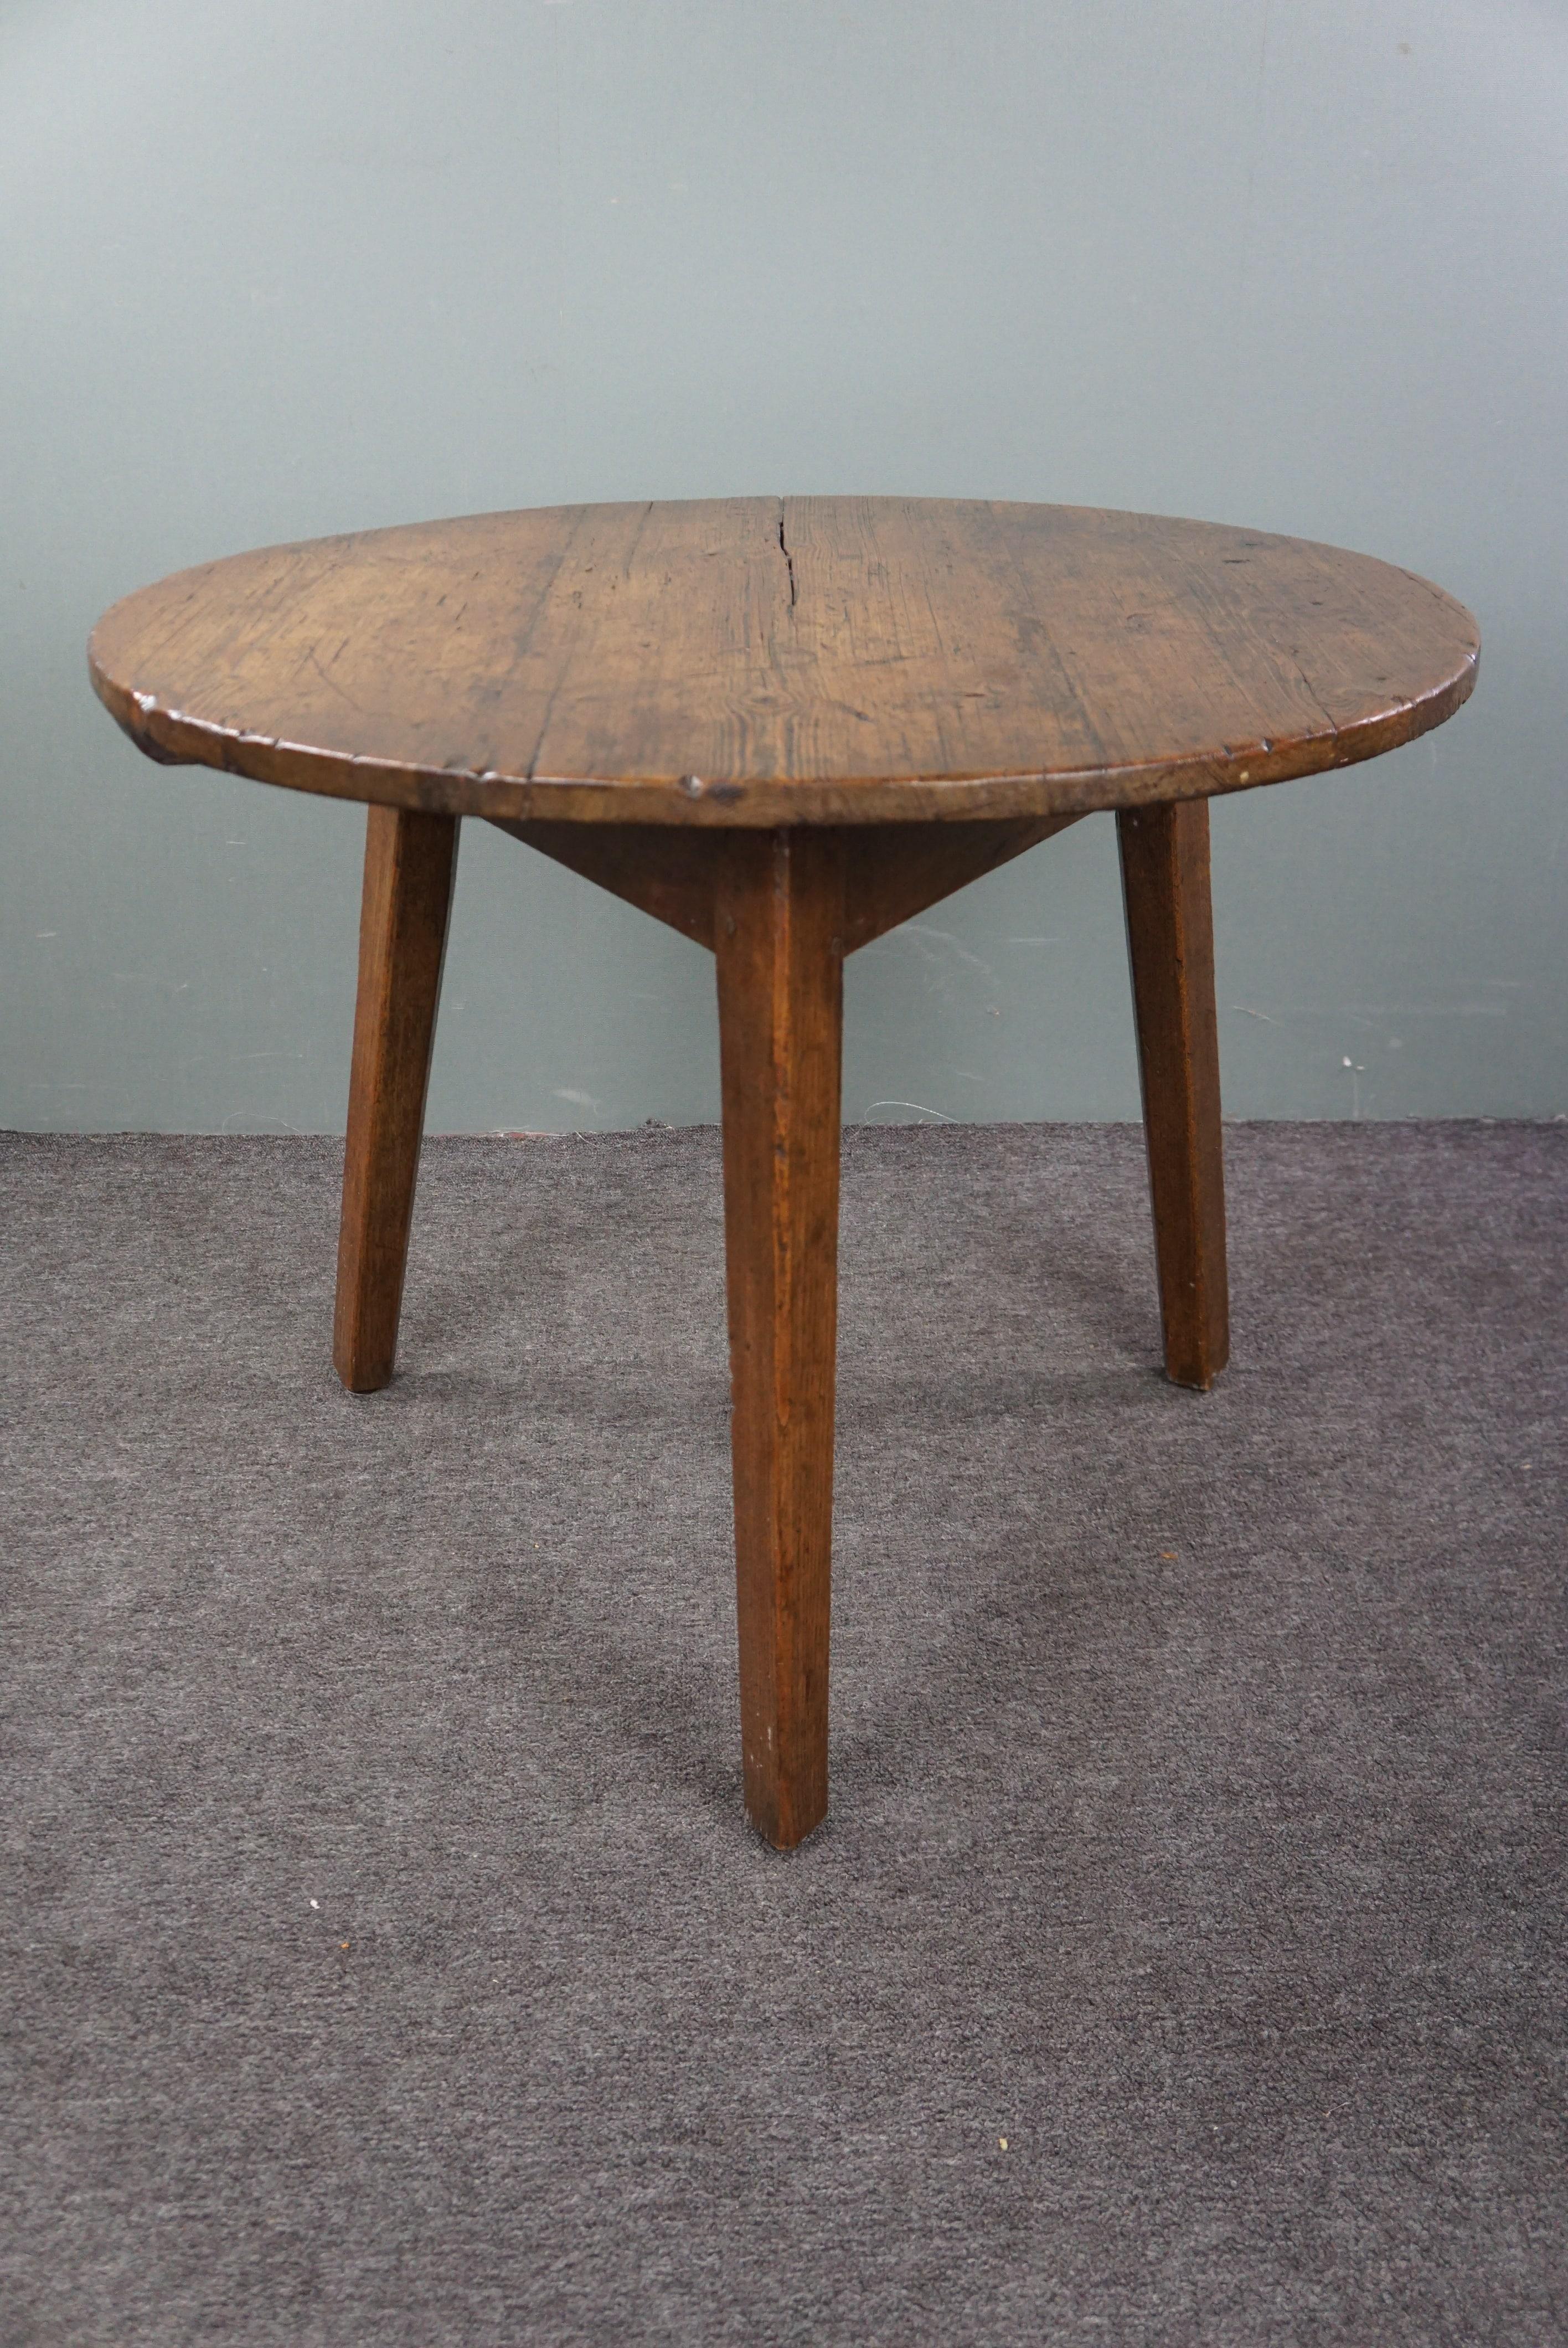 Angeboten wird dieser schöne englische Cricket-Tisch aus Kiefernholz aus dem 18. Jahrhundert. Wenn Sie ein echter Liebhaber schön gestalteter Innenräume sind, kommen Sie an echten antiken englischen Cricket-Tischen einfach nicht vorbei. Die Reinheit